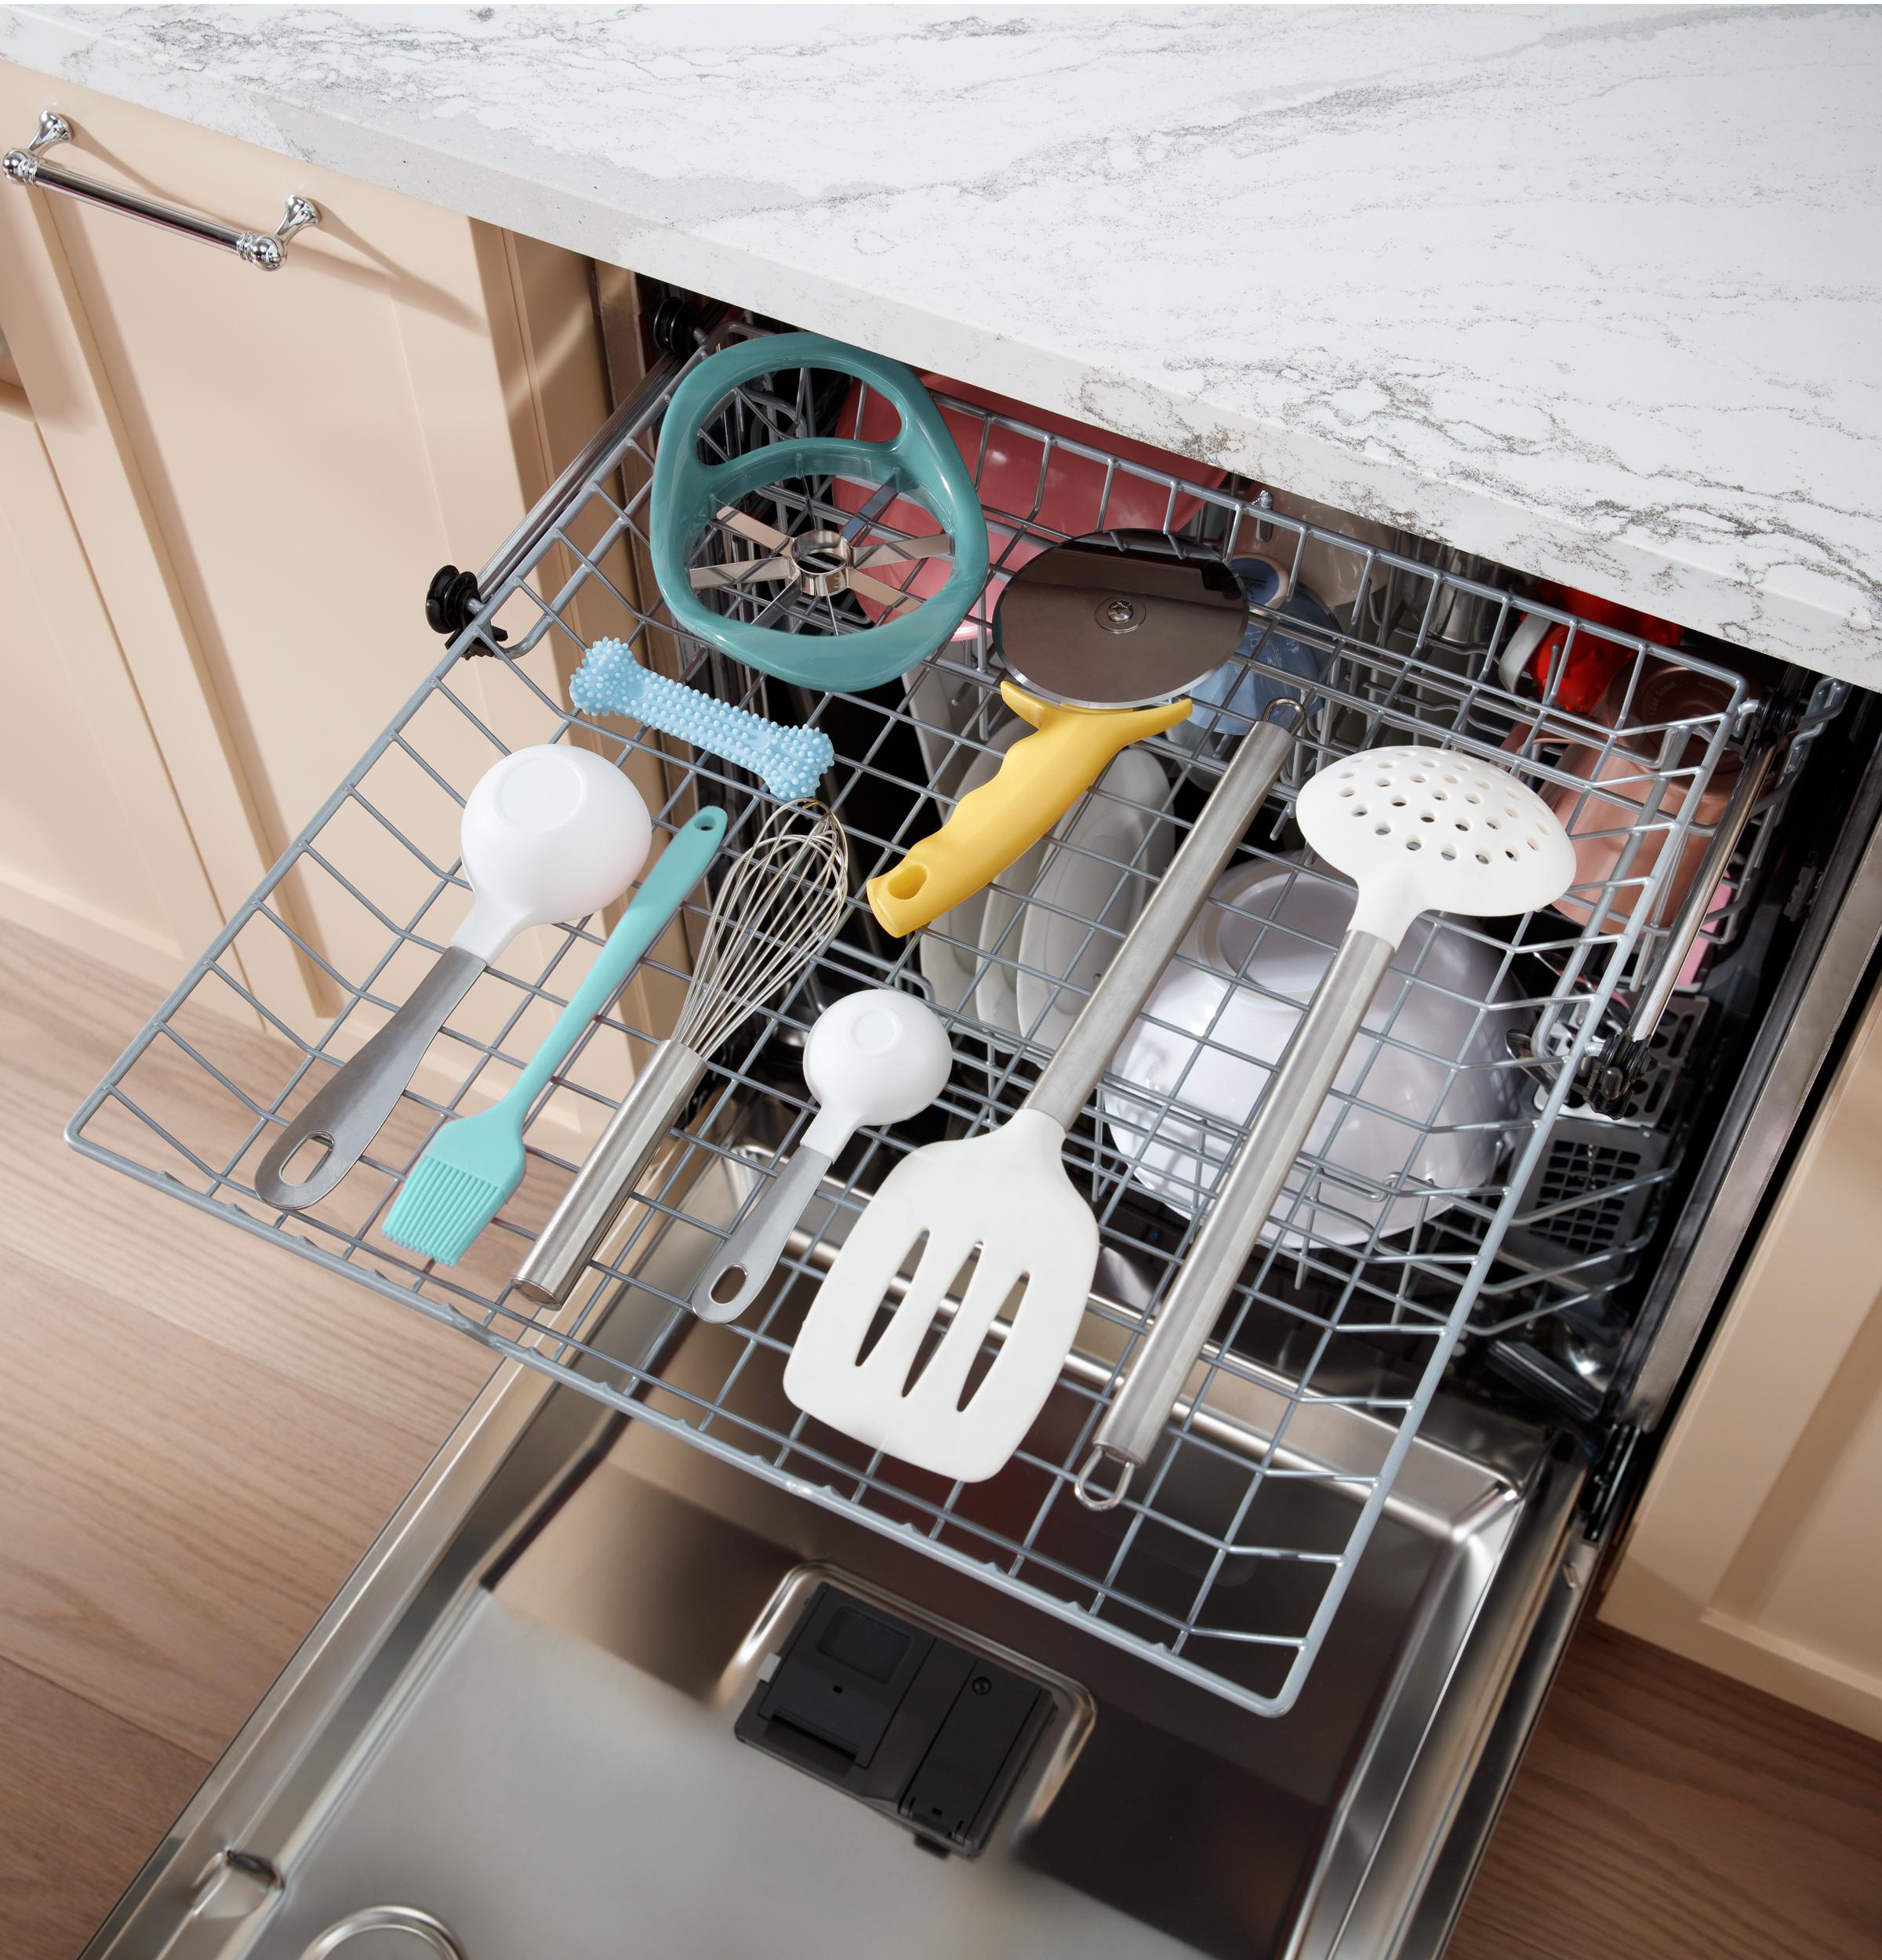 electricsaltandpeppergrinder #finds #dishwashersafe #howtouse #, Kitchen Gadget